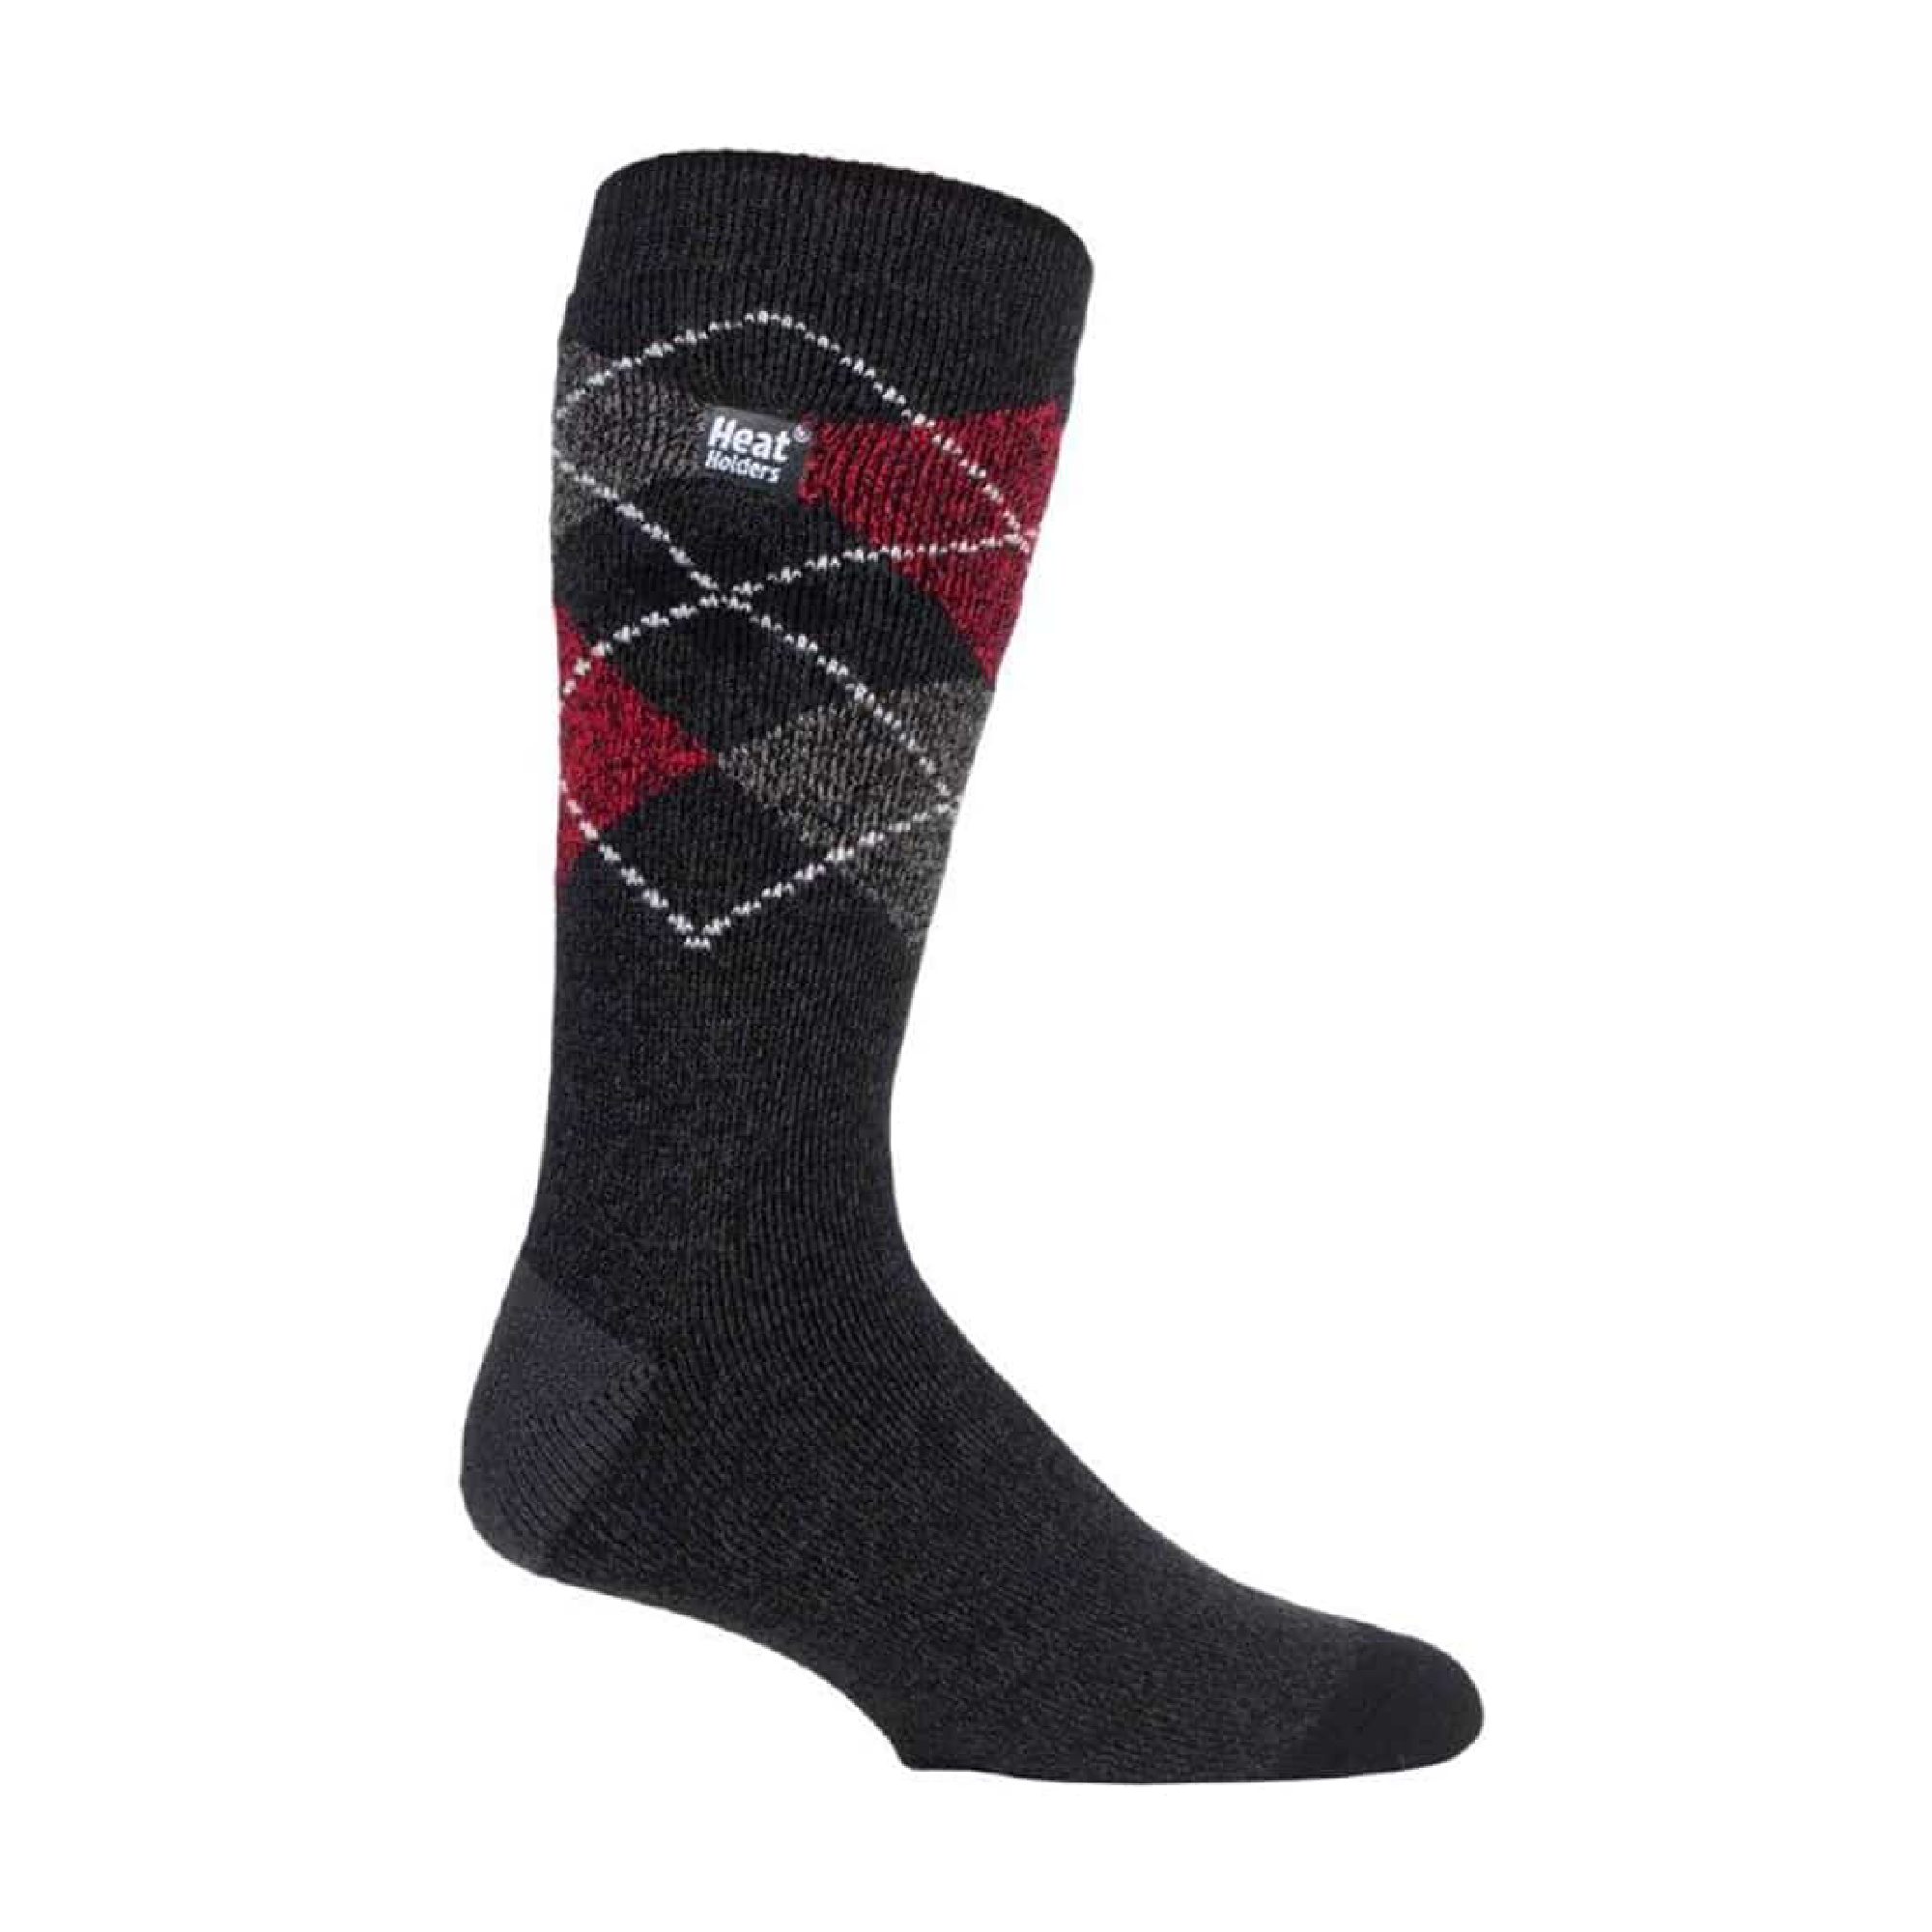 Mens Thin Warm 1.6 Tog Lightweight Thermal Dress Socks - Sock Snob